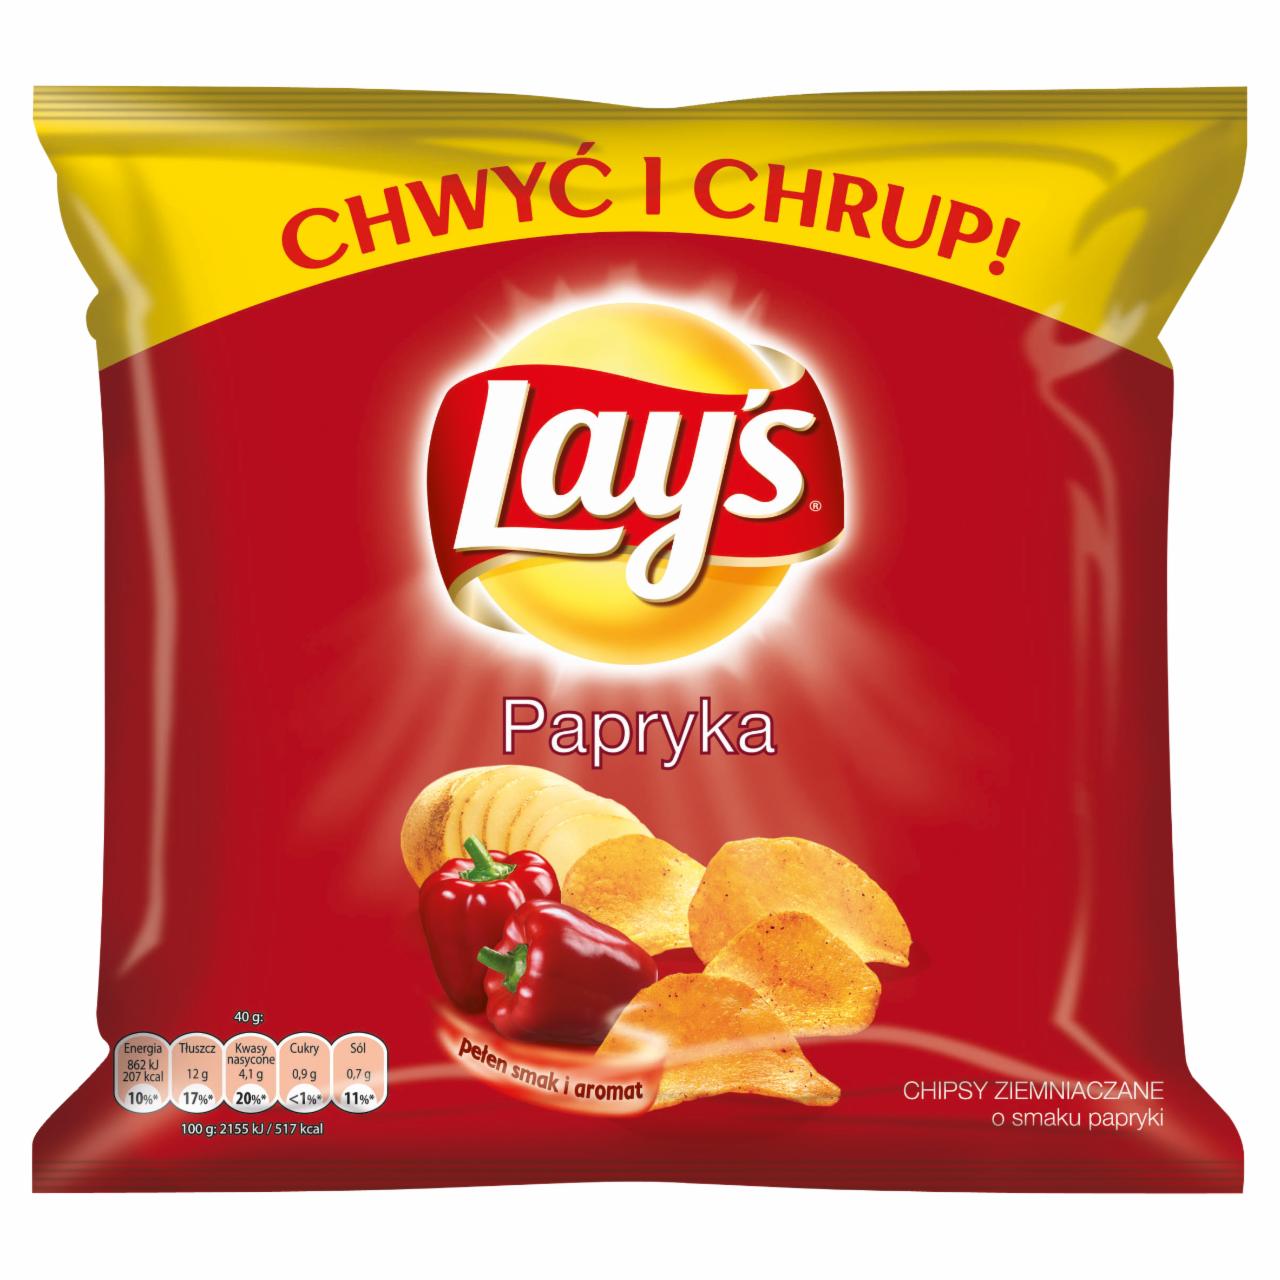 Zdjęcia - Lay's Papryka Chipsy ziemniaczane 40 g